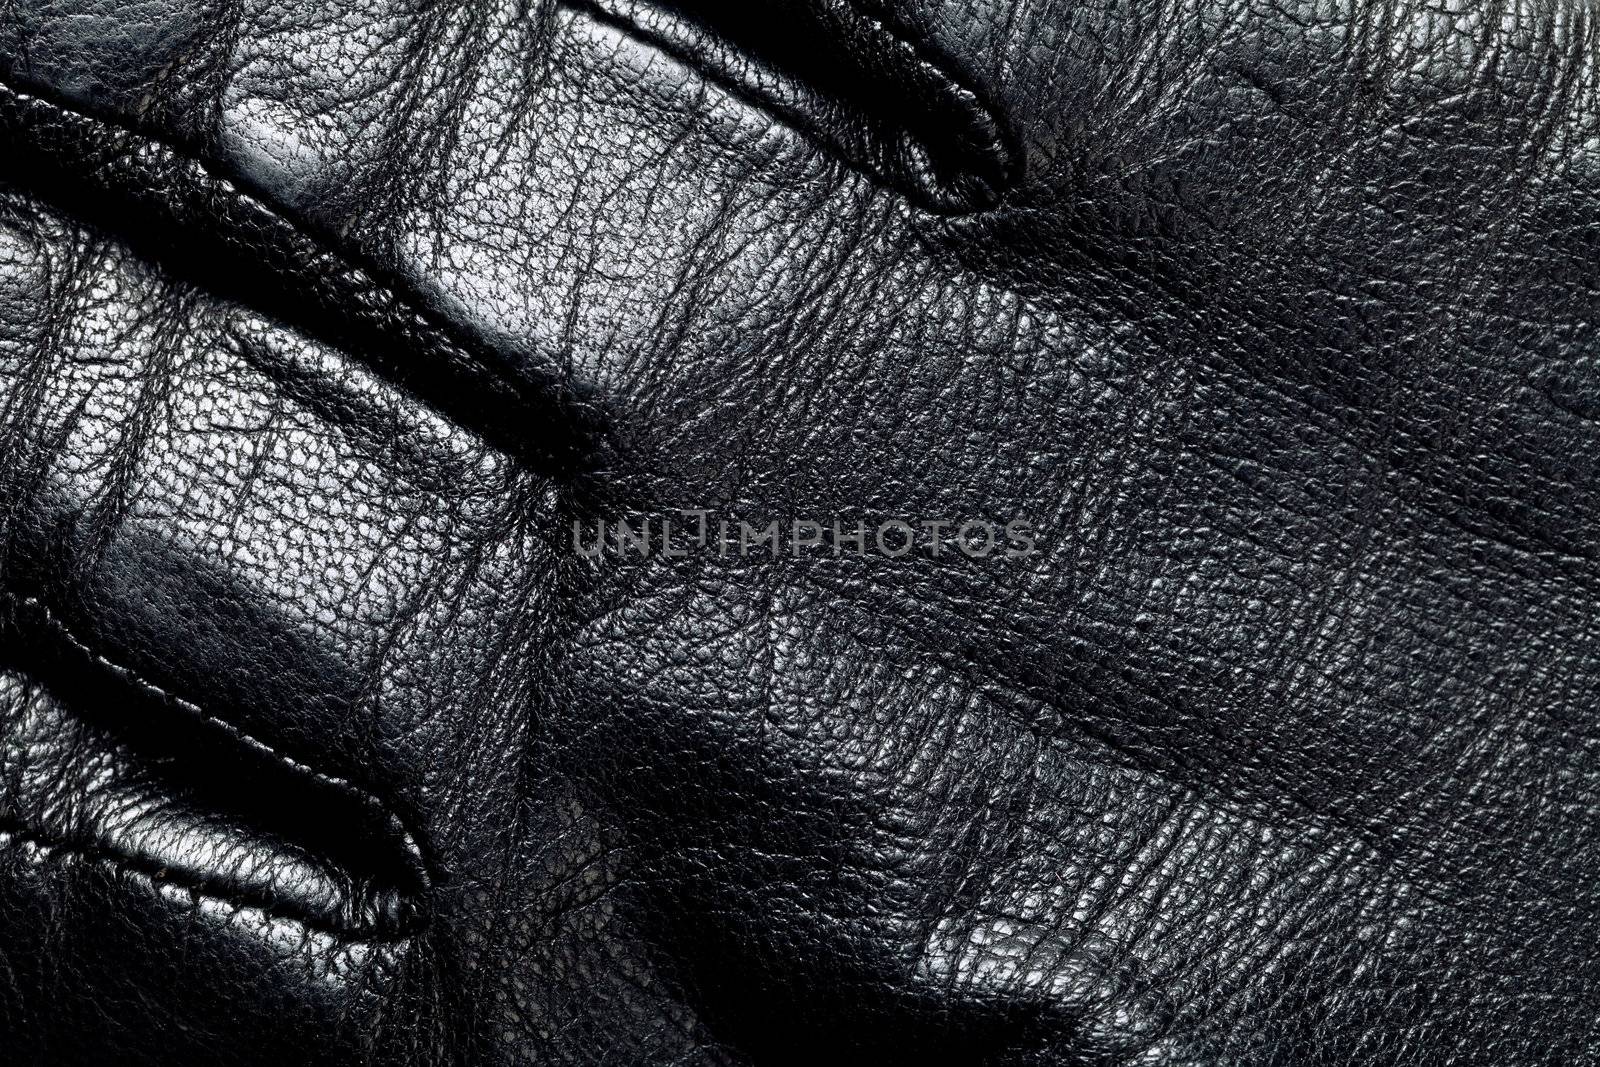 Leather Background by bozena_fulawka